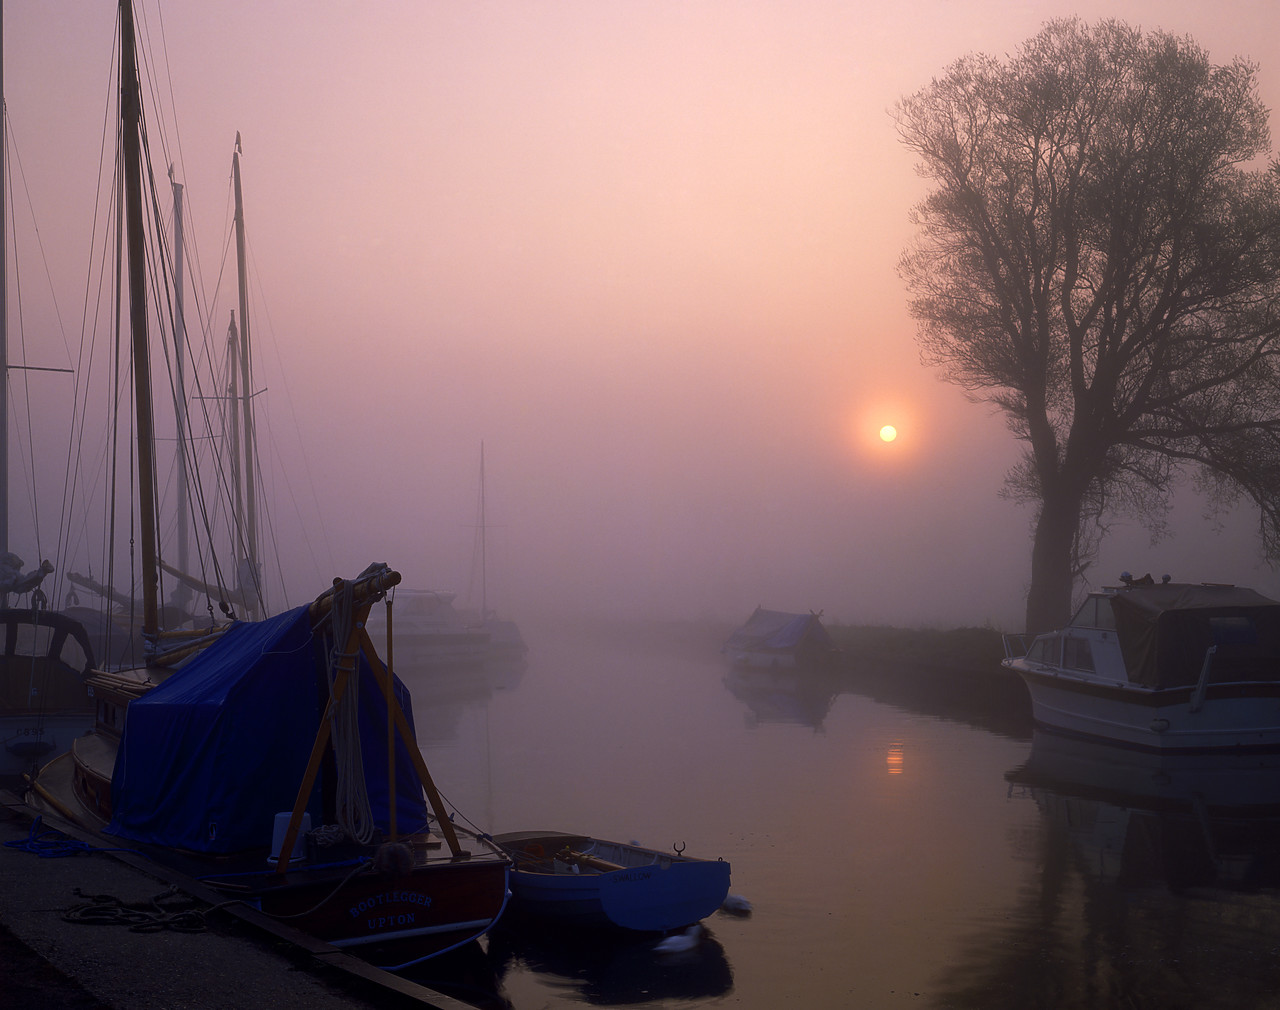 #902716 - Misty Sunrise & Boats, Upton Dyke, Norfolk, England